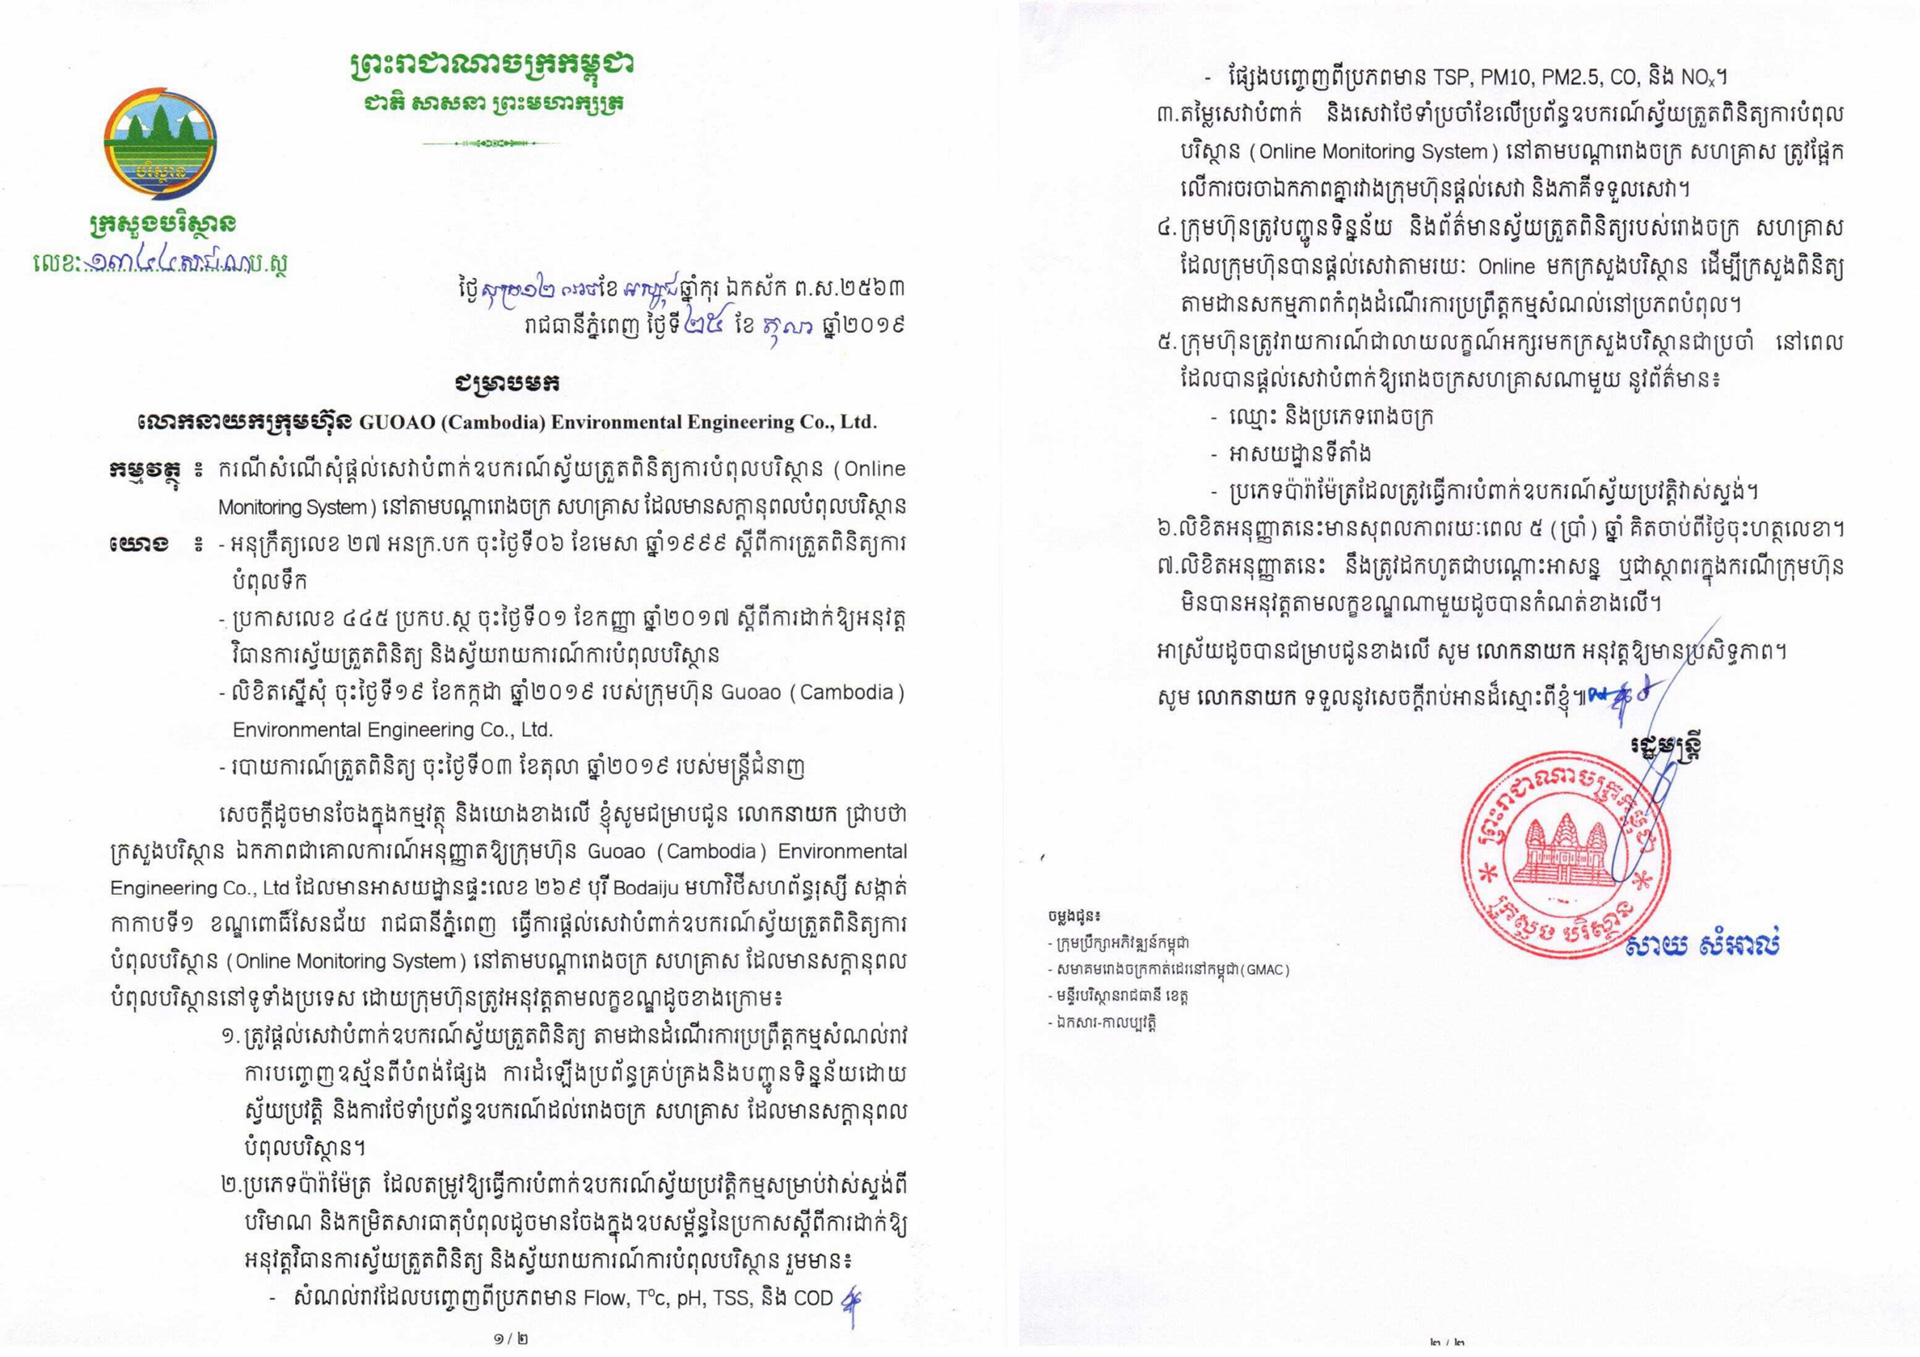 柬埔寨污染源在线监测系统运营服务认证